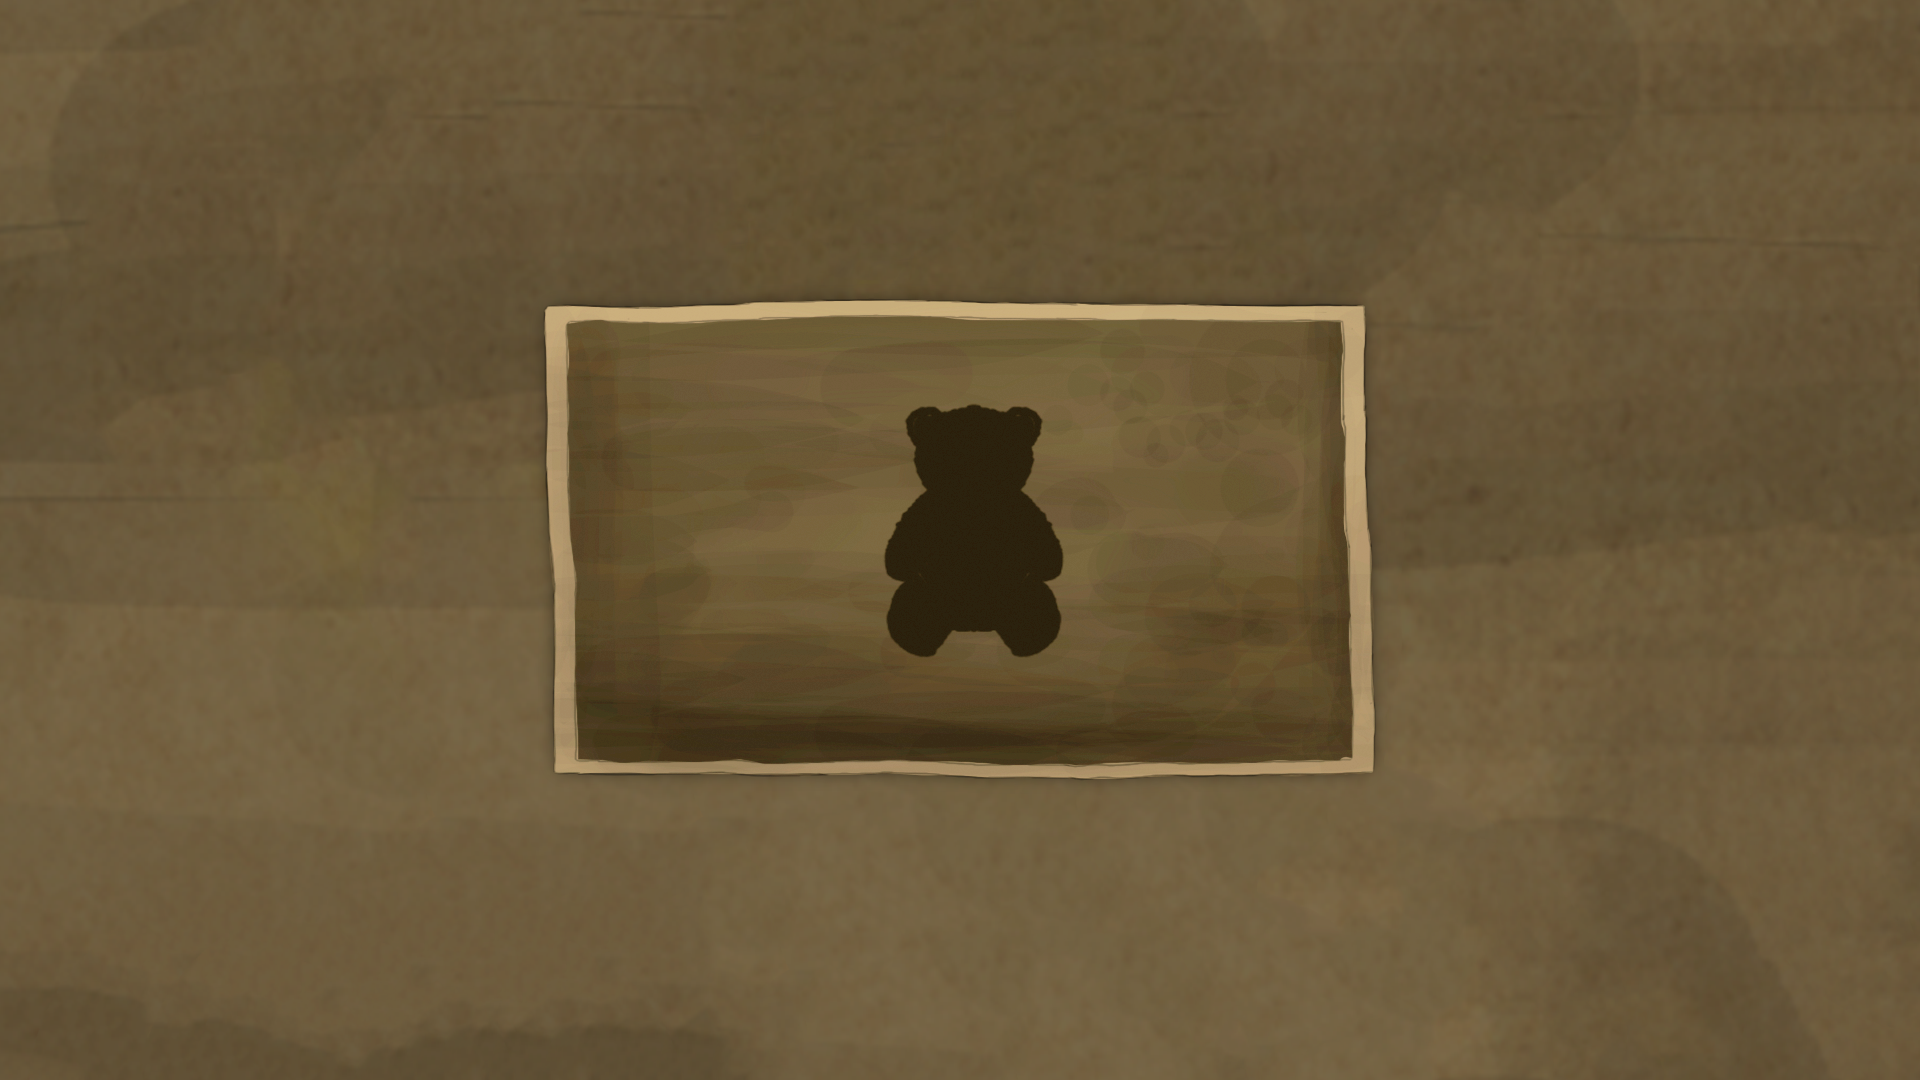 Found a toy bear